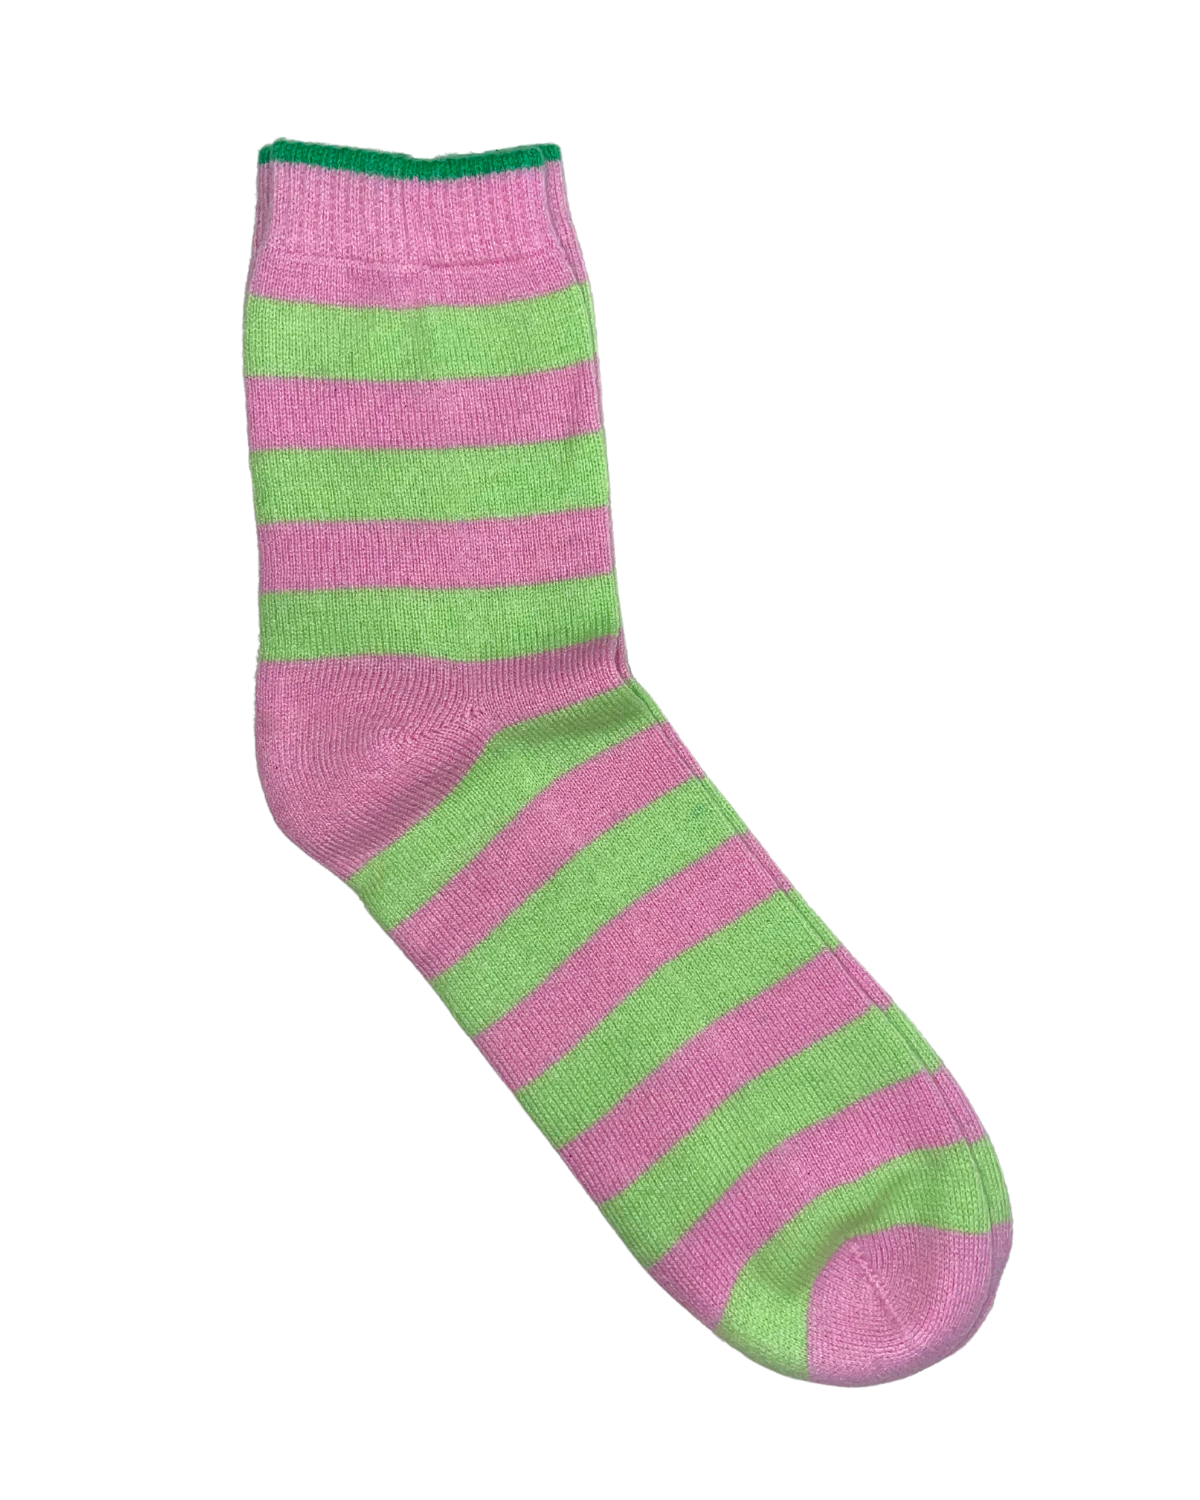 Stripe Socks (Rose/Lime)